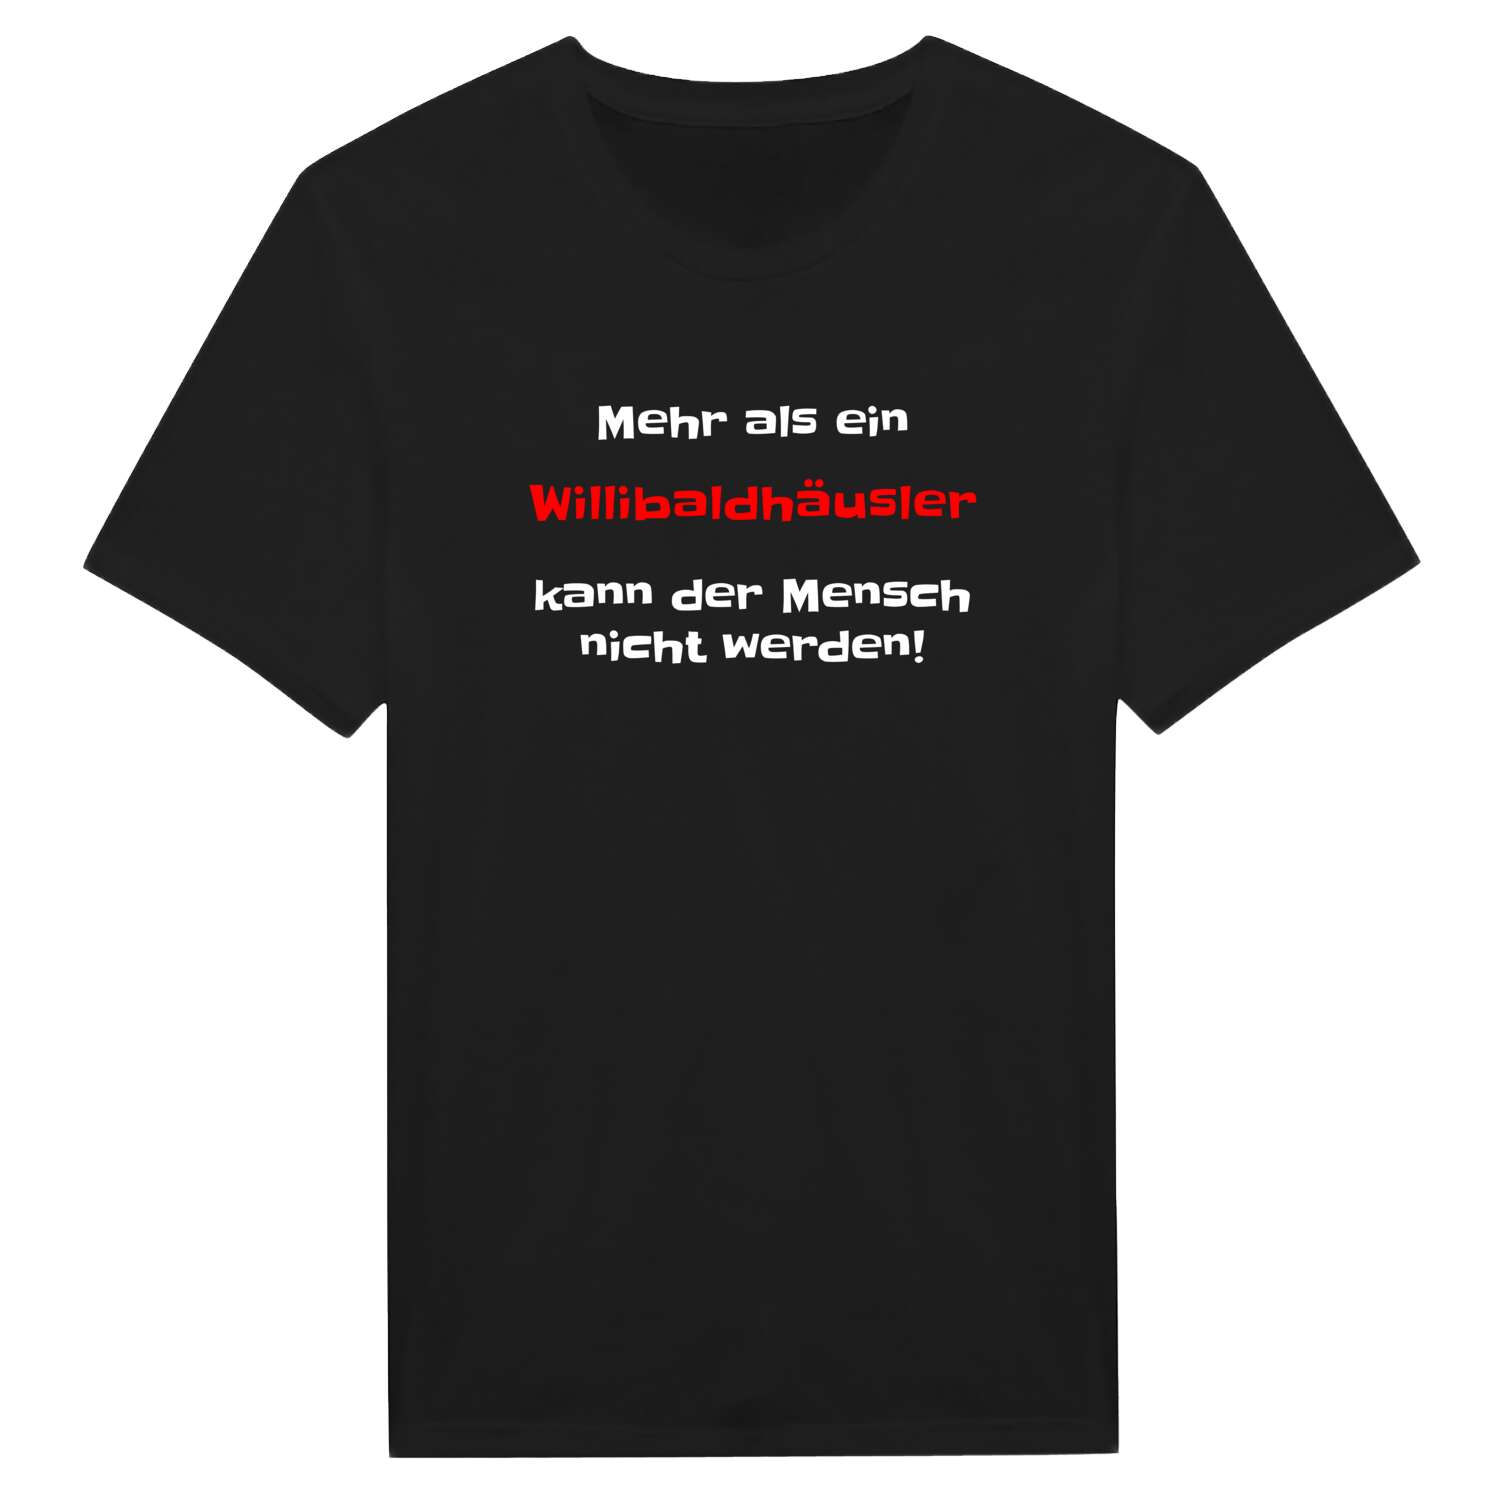 Willibaldhäusl T-Shirt »Mehr als ein«